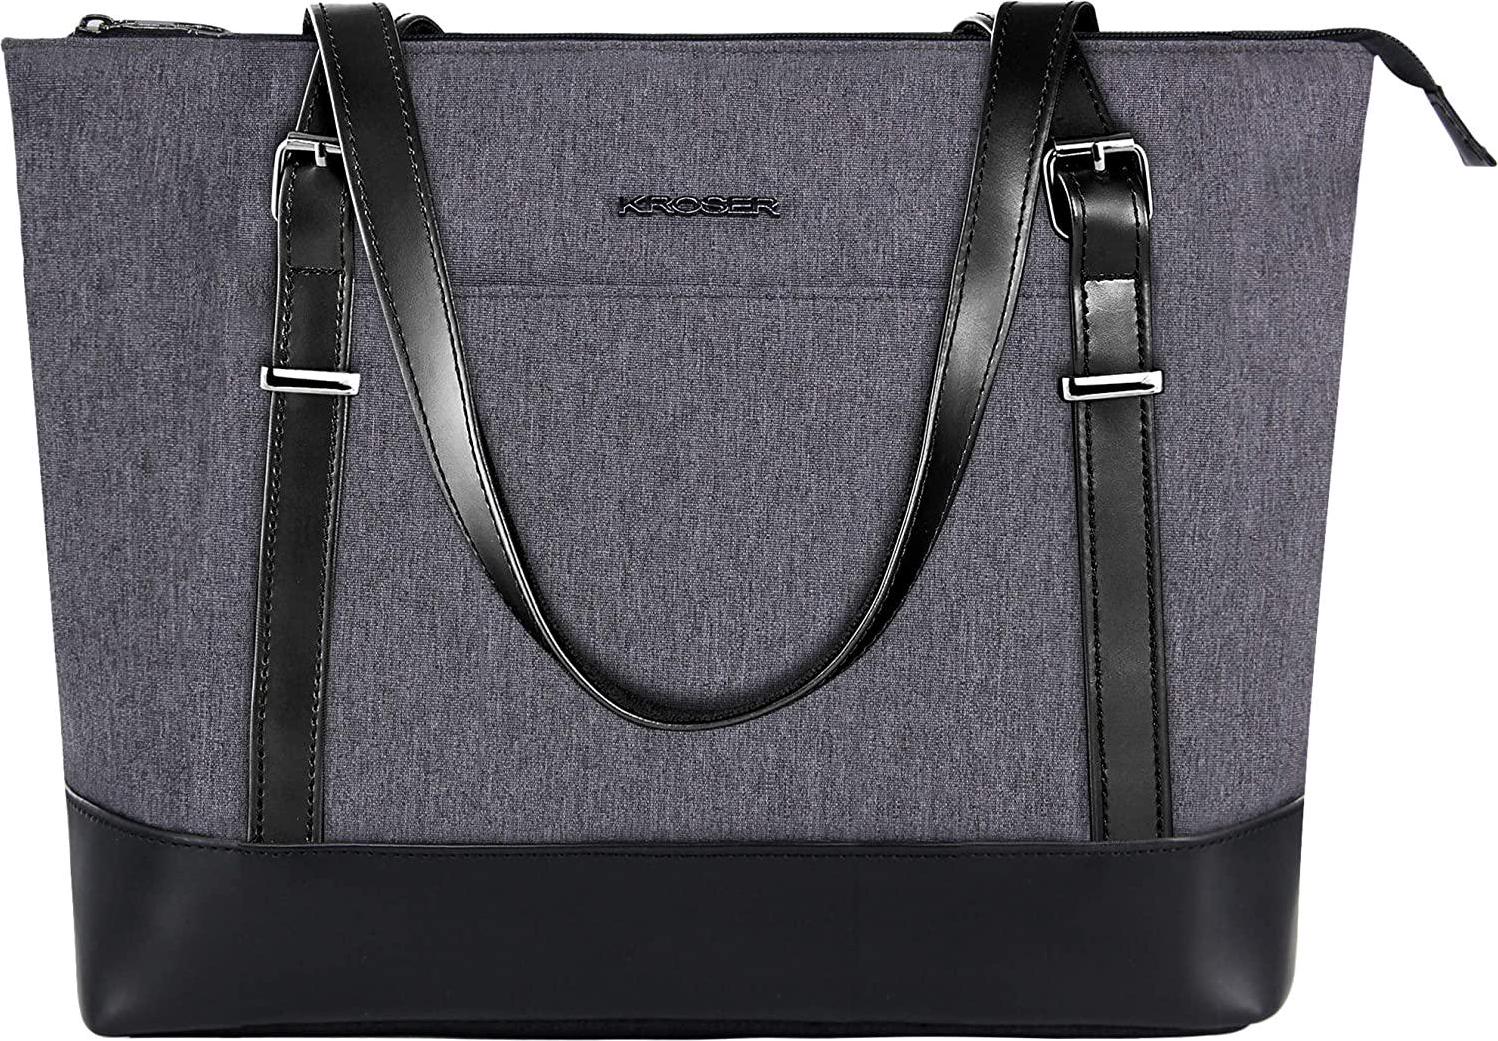 KROSER, KROSER Laptop Tote Bag 15.6 Inch Large Shoulder Bag Lightweight Water-Repellent Women Stylish Handbag for Work/Business/School/College/Travel-Grey